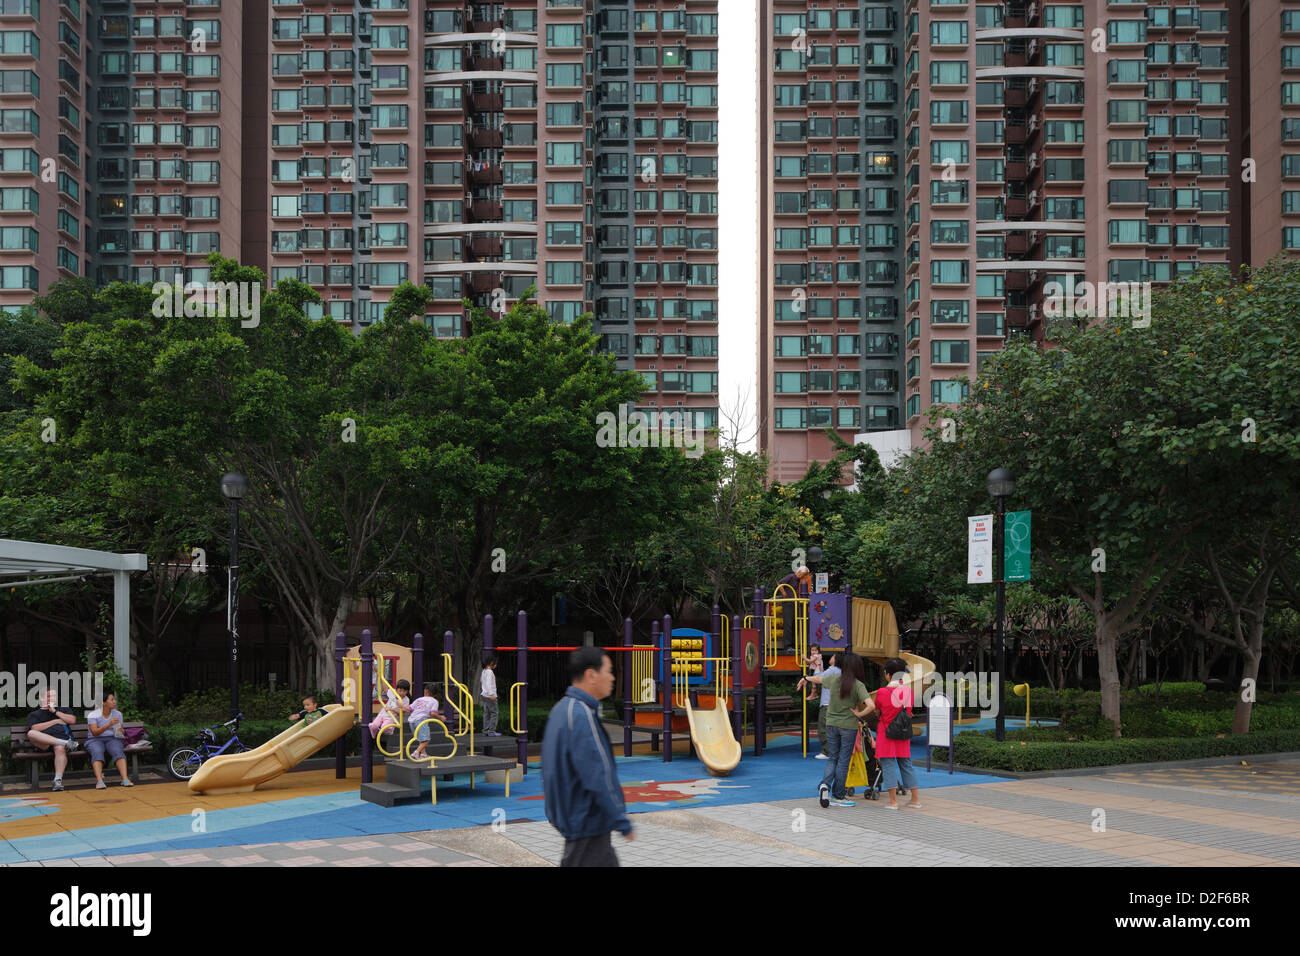 Hong Kong, China, urbanization with playground in Hong Kong Tsing Yi Stock Photo